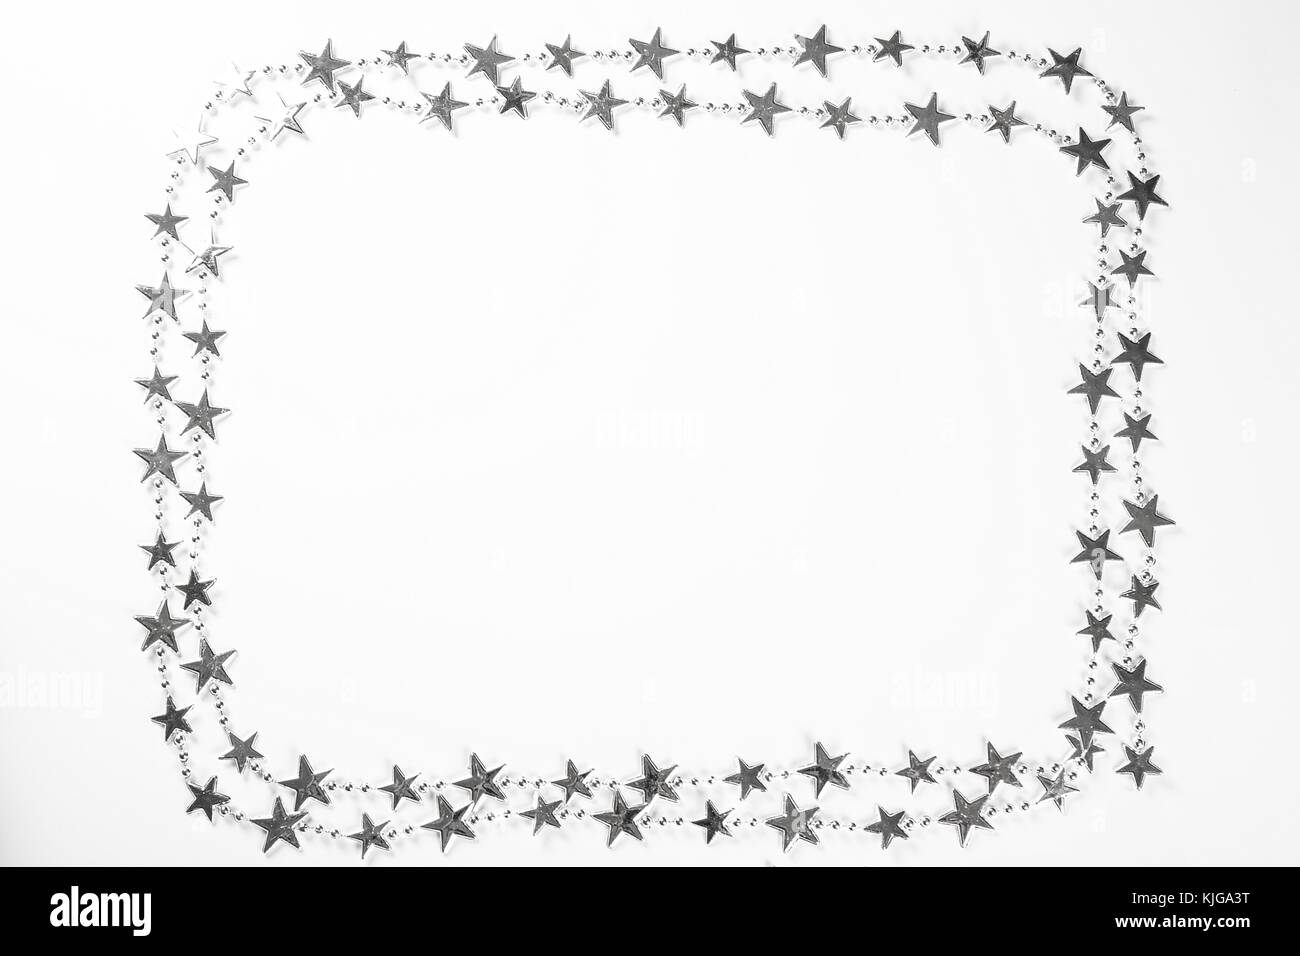 Weihnachten Rahmen mit silbernen Sternen Dekorationen auf weißem Hintergrund. Einfache weihnachten Komposition mit freier Speicherplatz Stockfoto